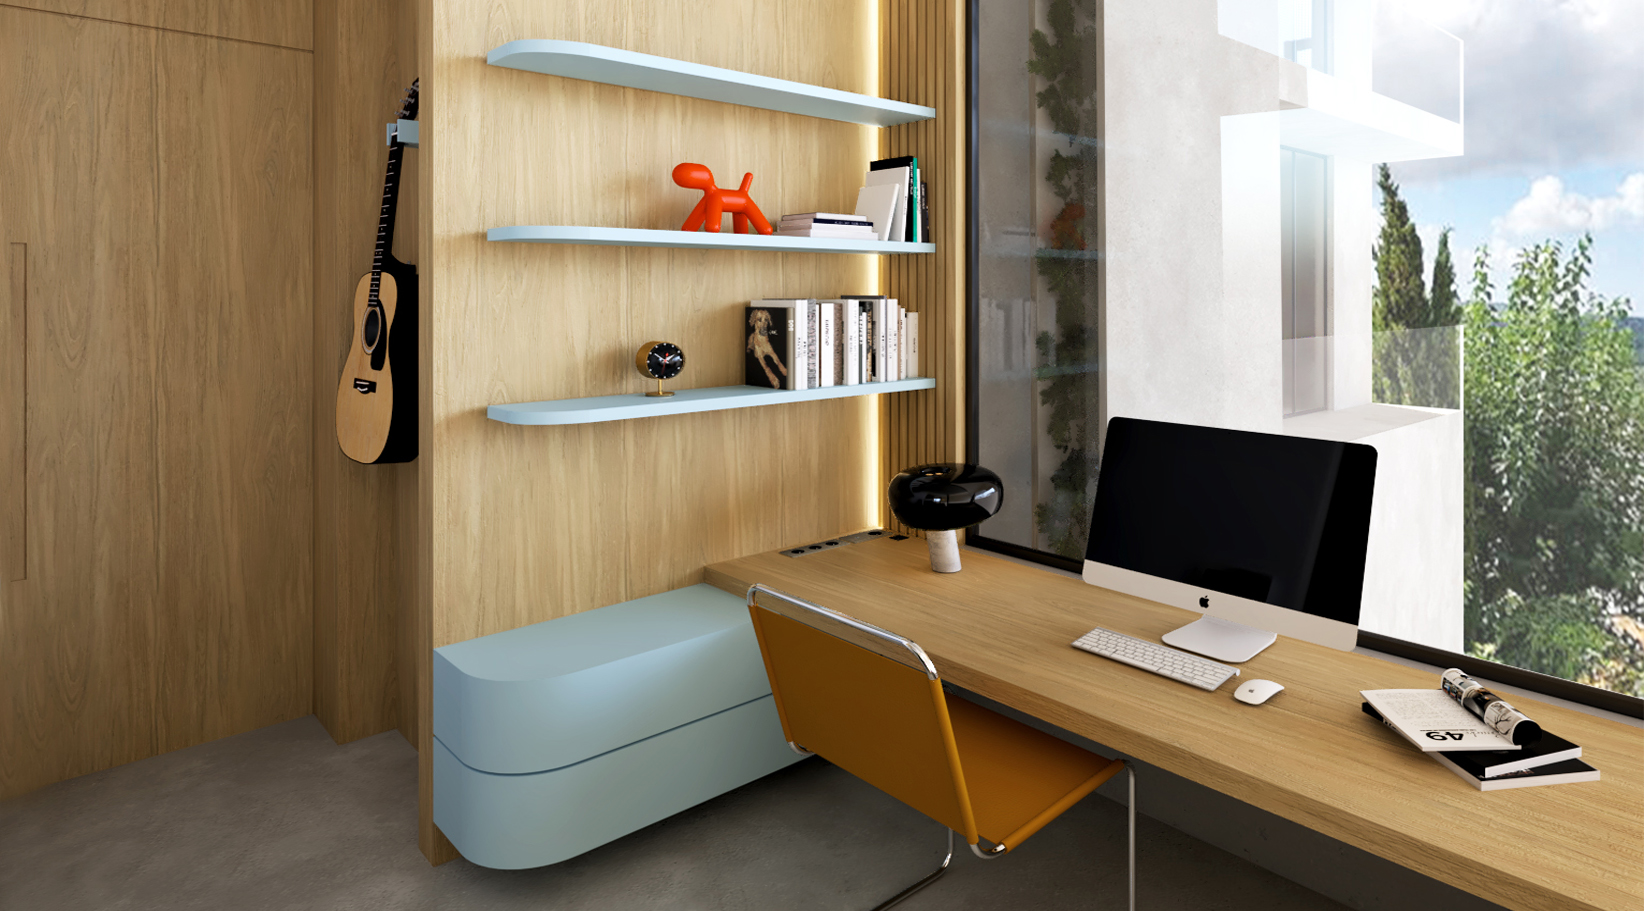 8-interior-design-amazing-house-office-ideas-zen-atrium-concept-color-furniture